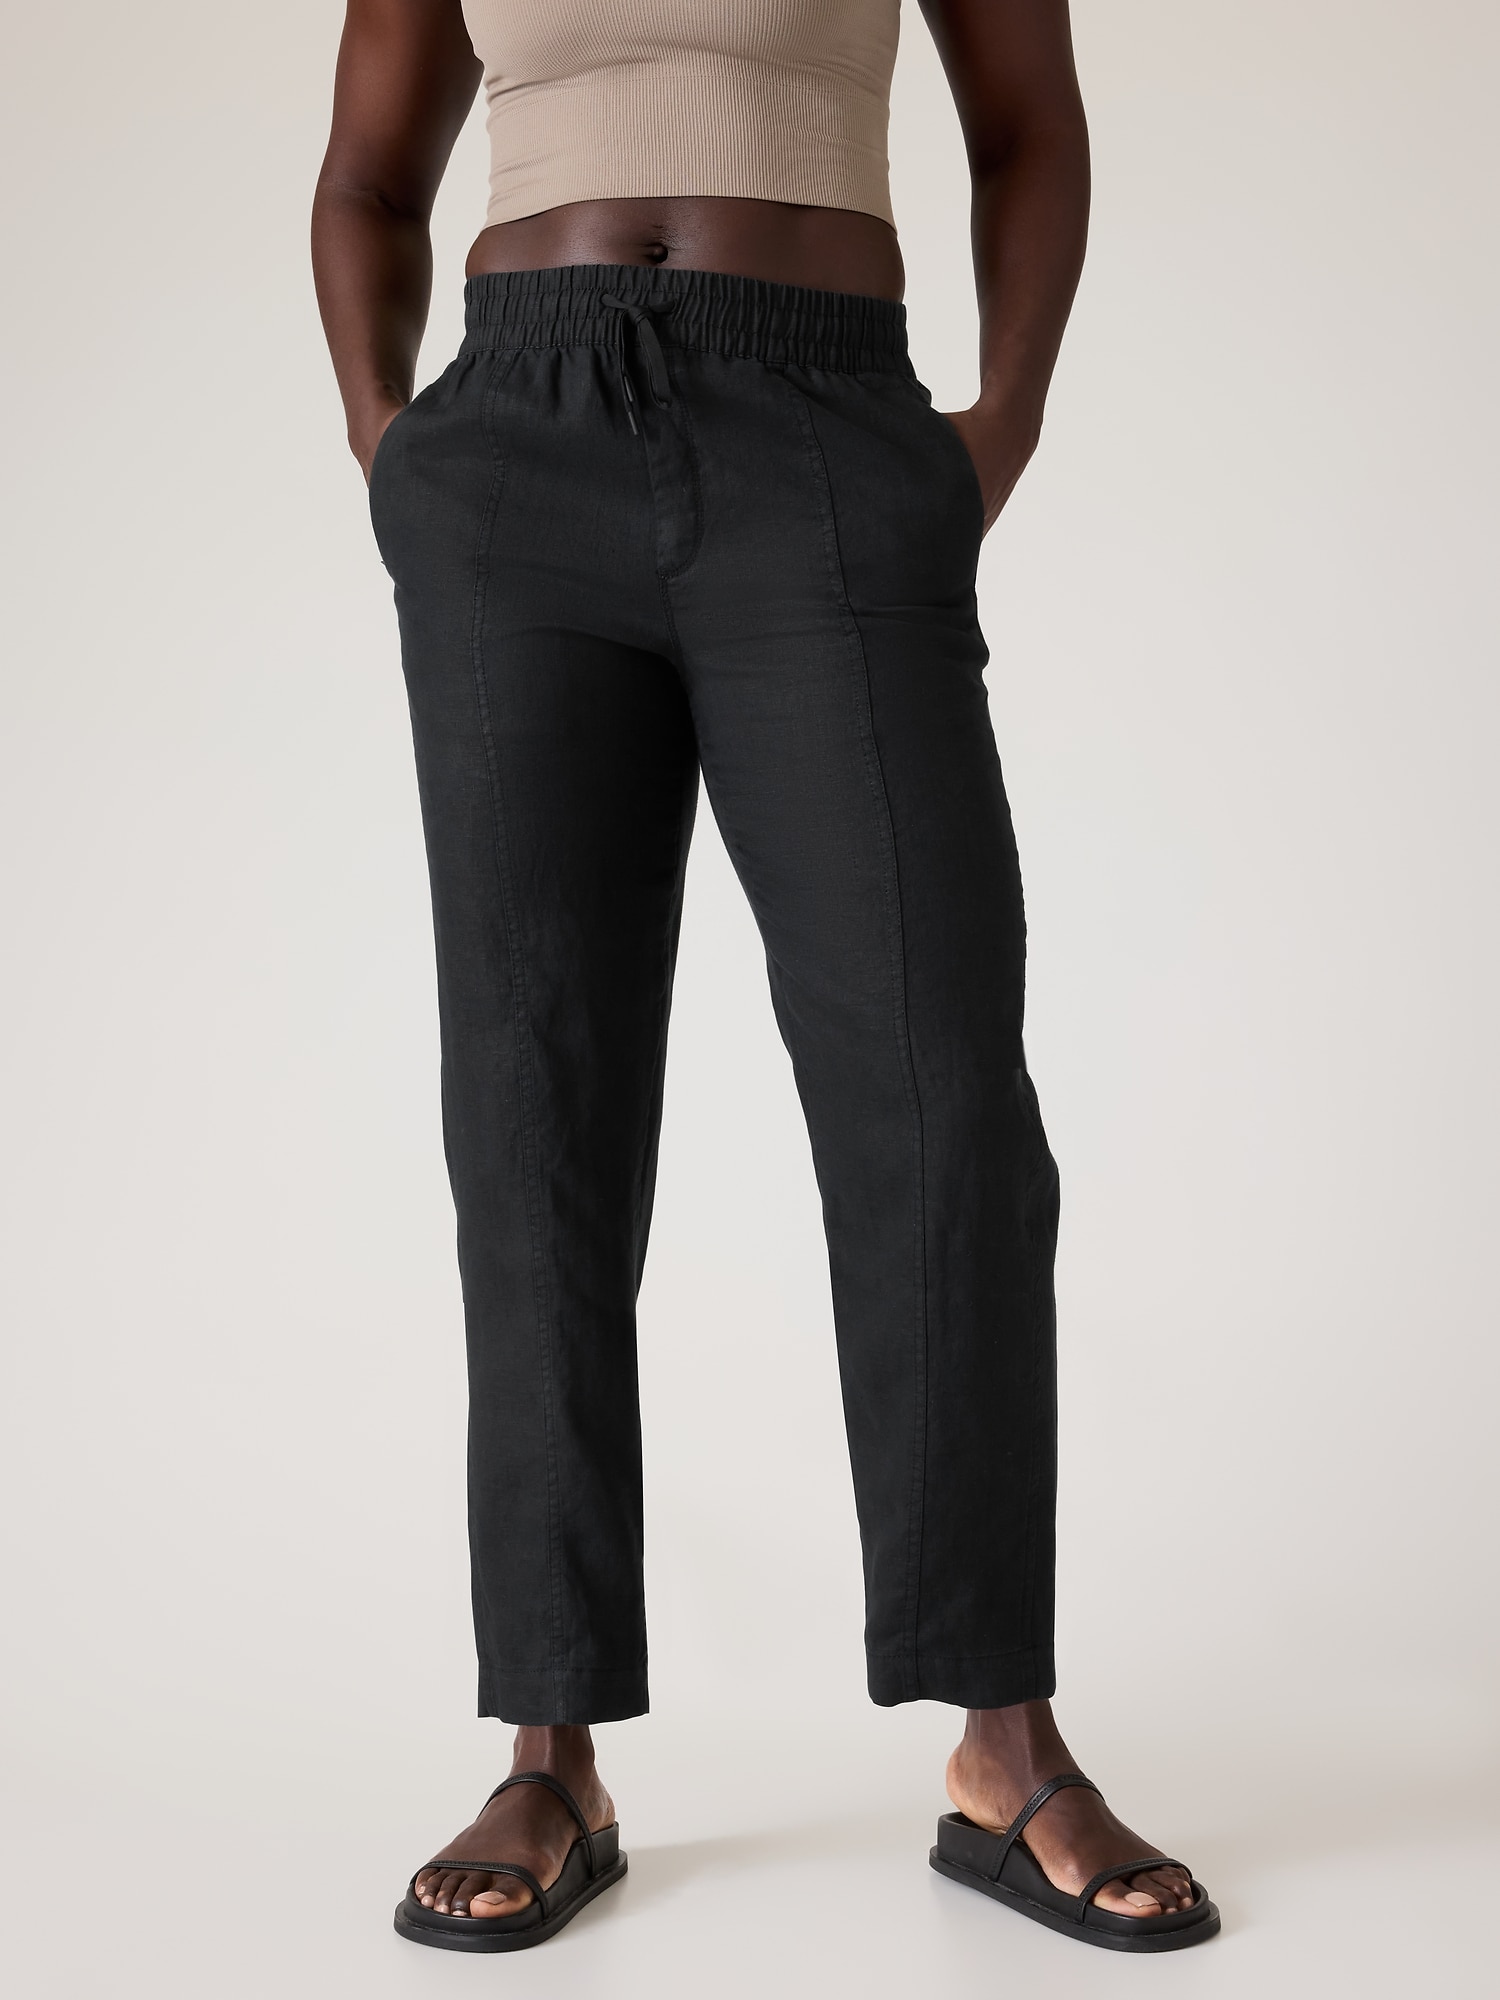 Ankle-length Linen Pants - Black - Ladies